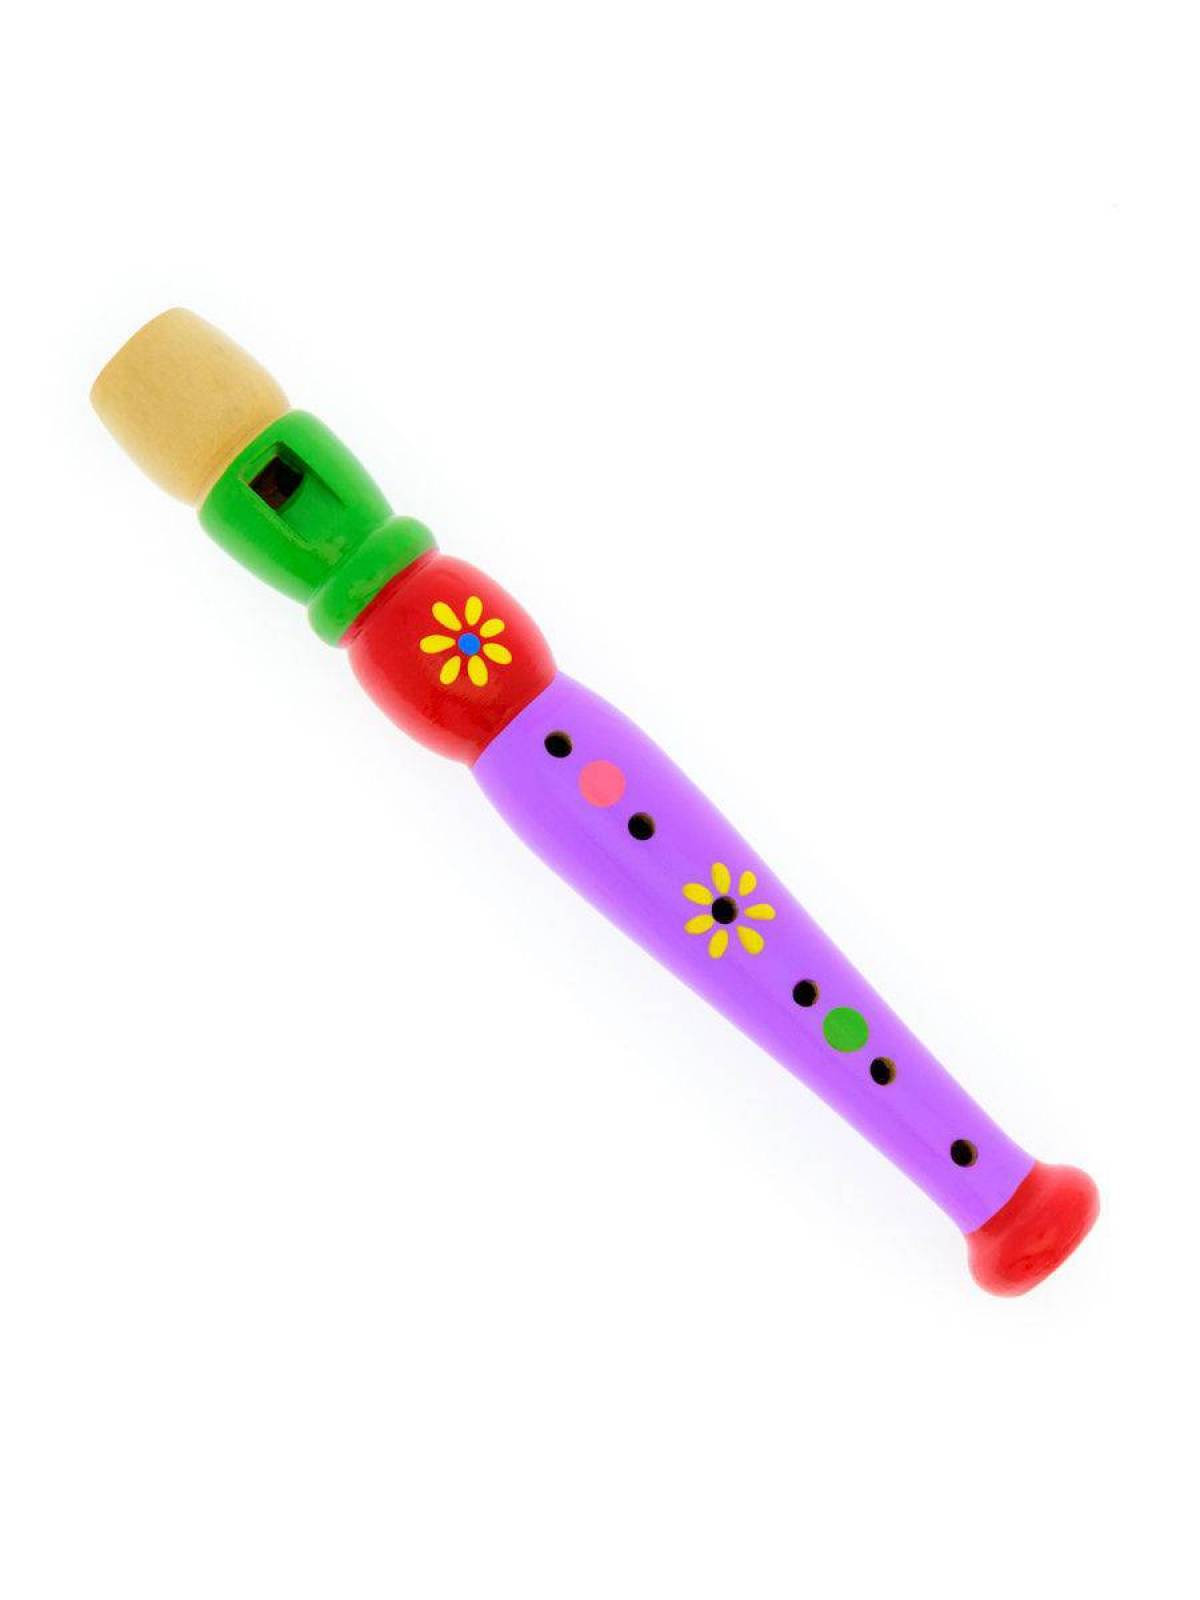 Дудка детская. Анданте флейта д217а. Дудочка музыкальный инструмент. Дудочка для детей. Детские музыкальные инструменты дудочка.